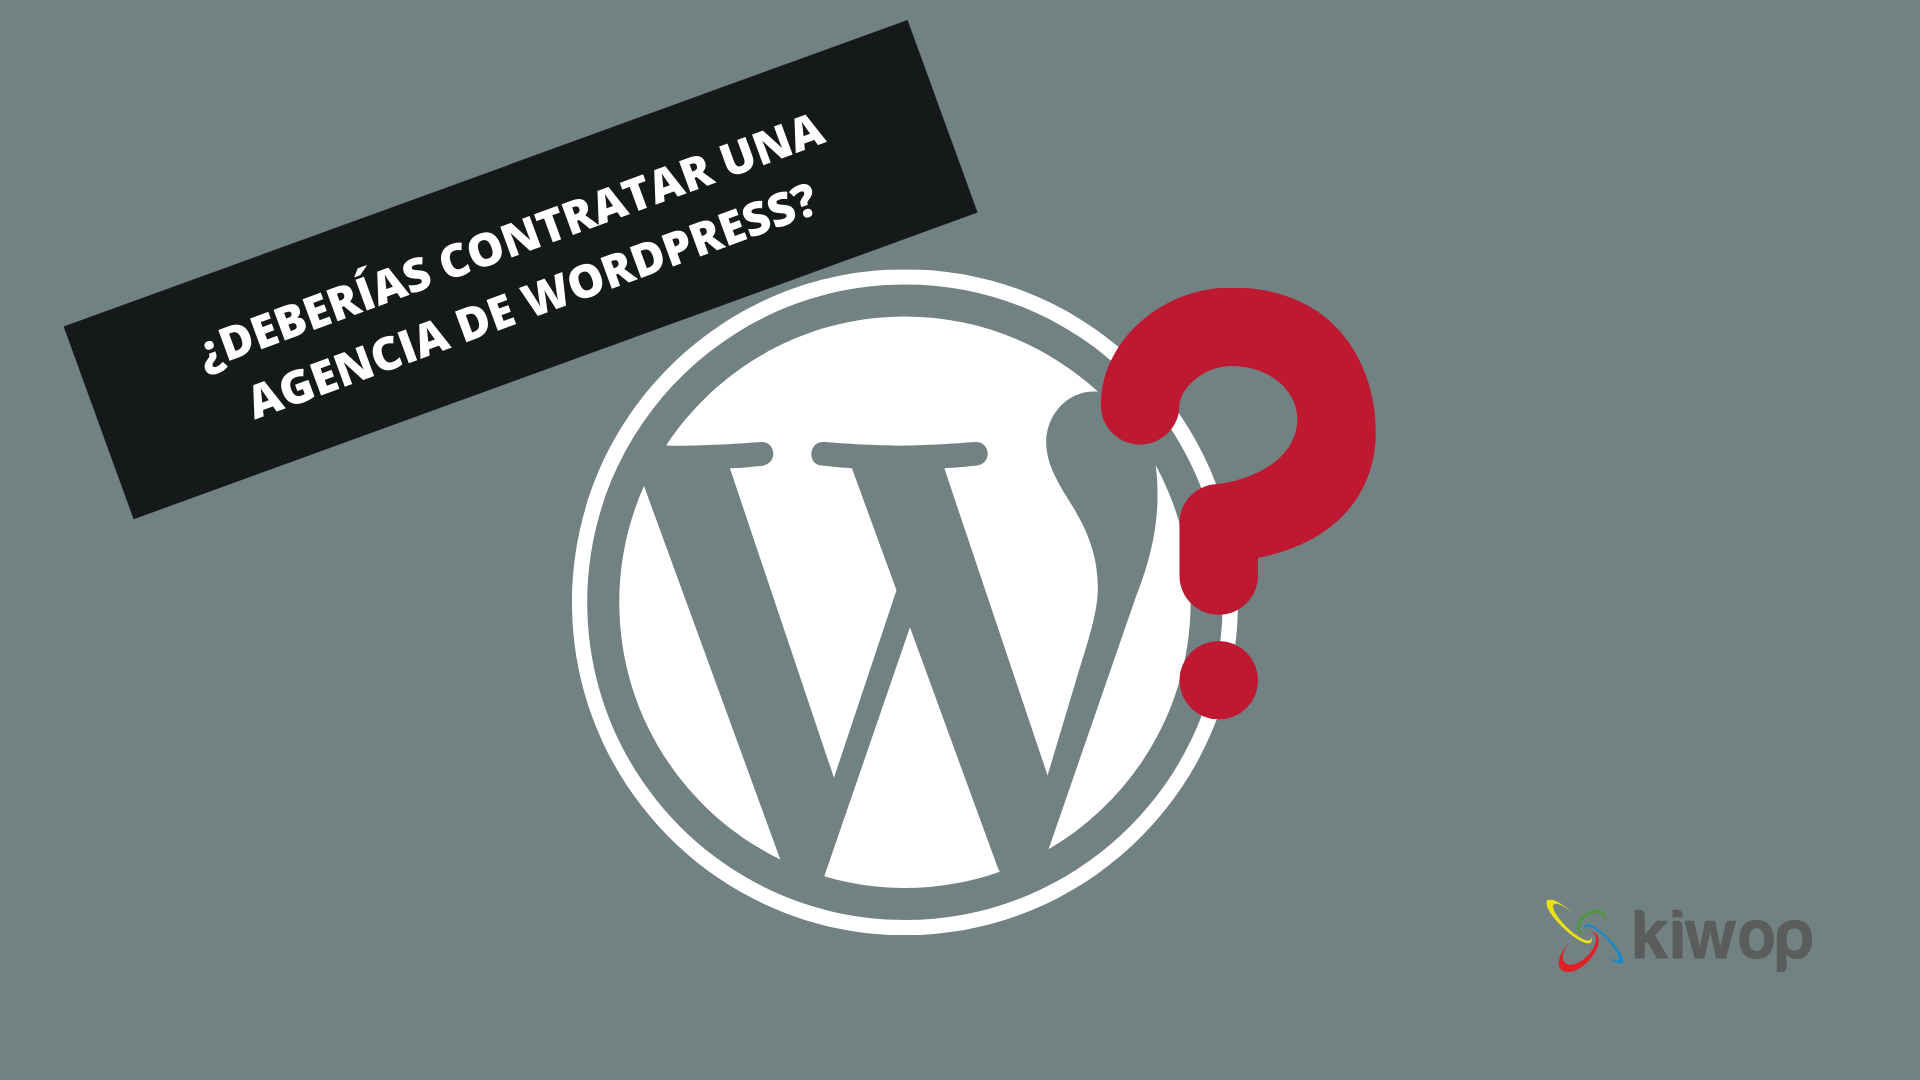 Hauries de contractar una agència de WordPress?